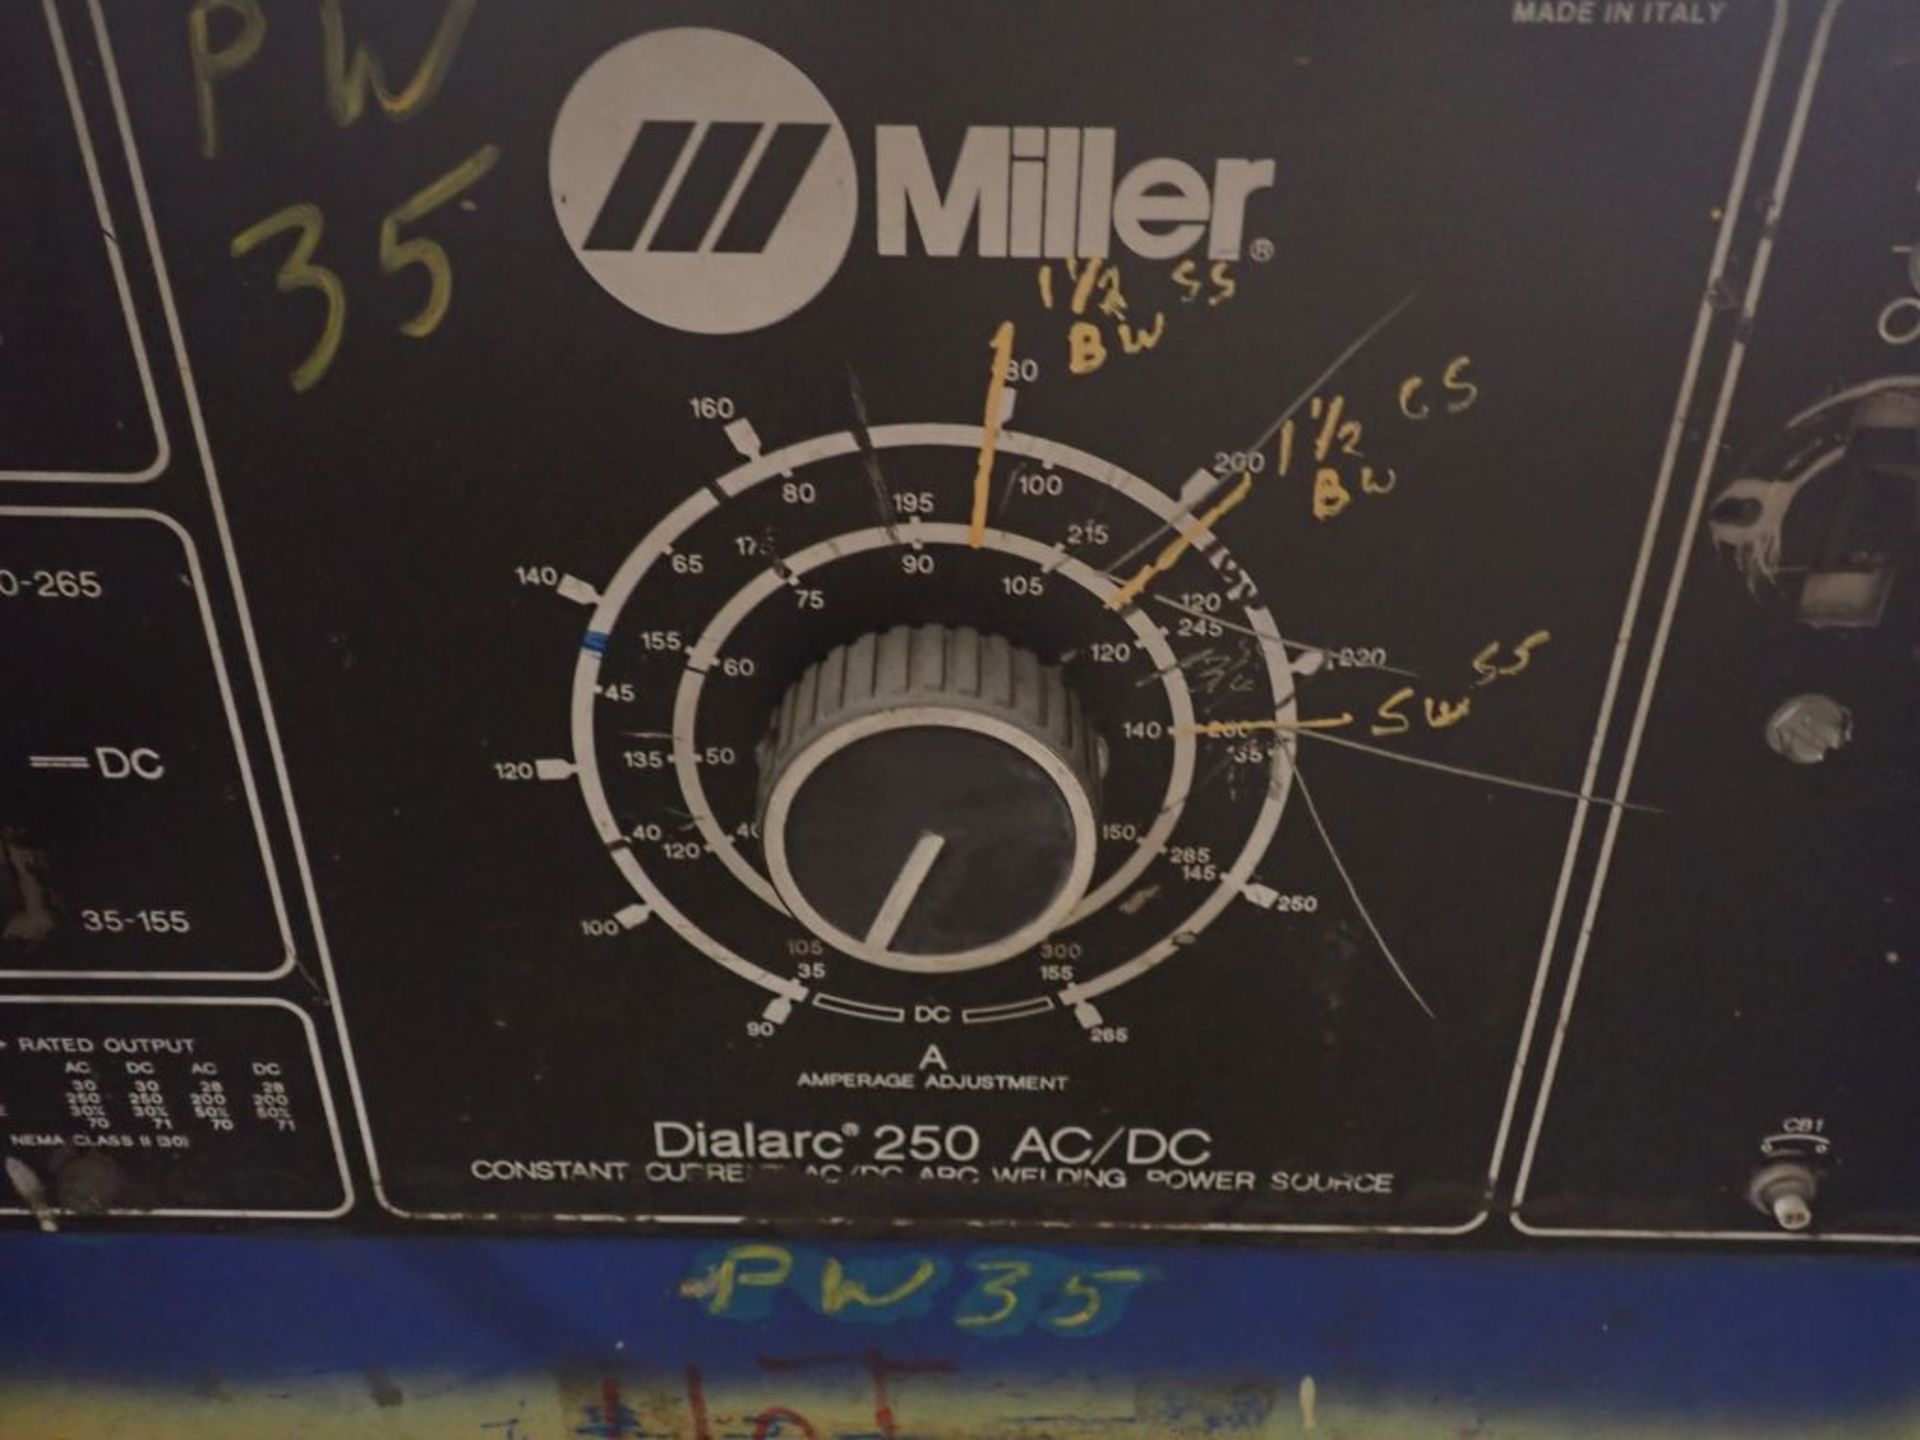 Miller Welding Power Source - Image 6 of 8